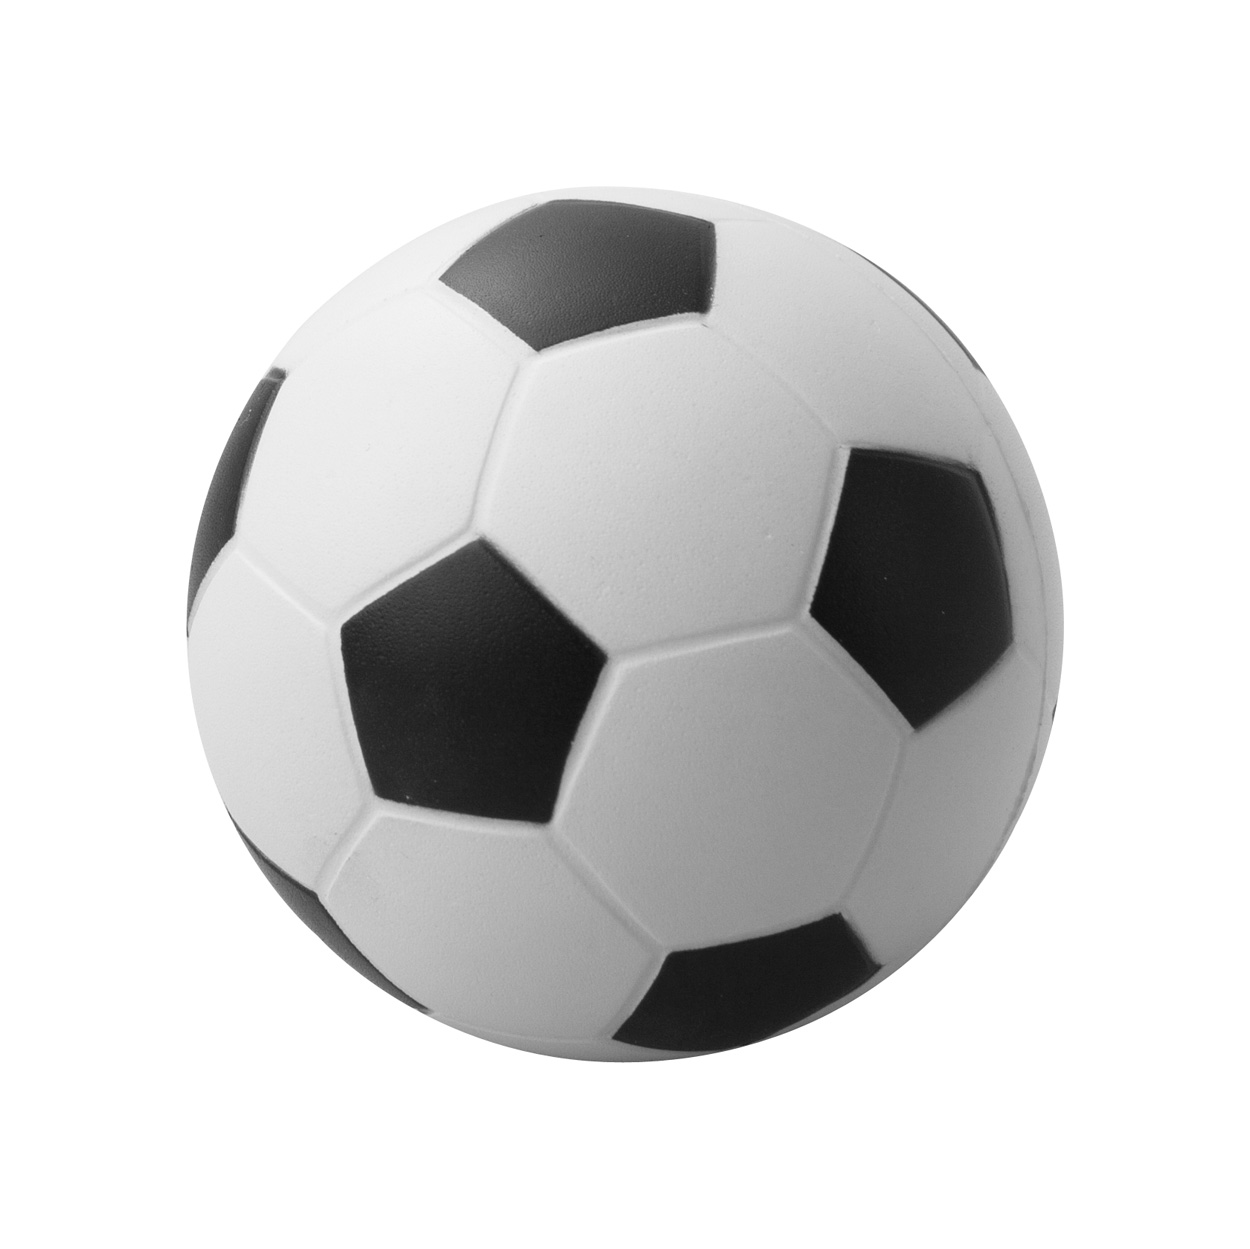 Kick antistress ball